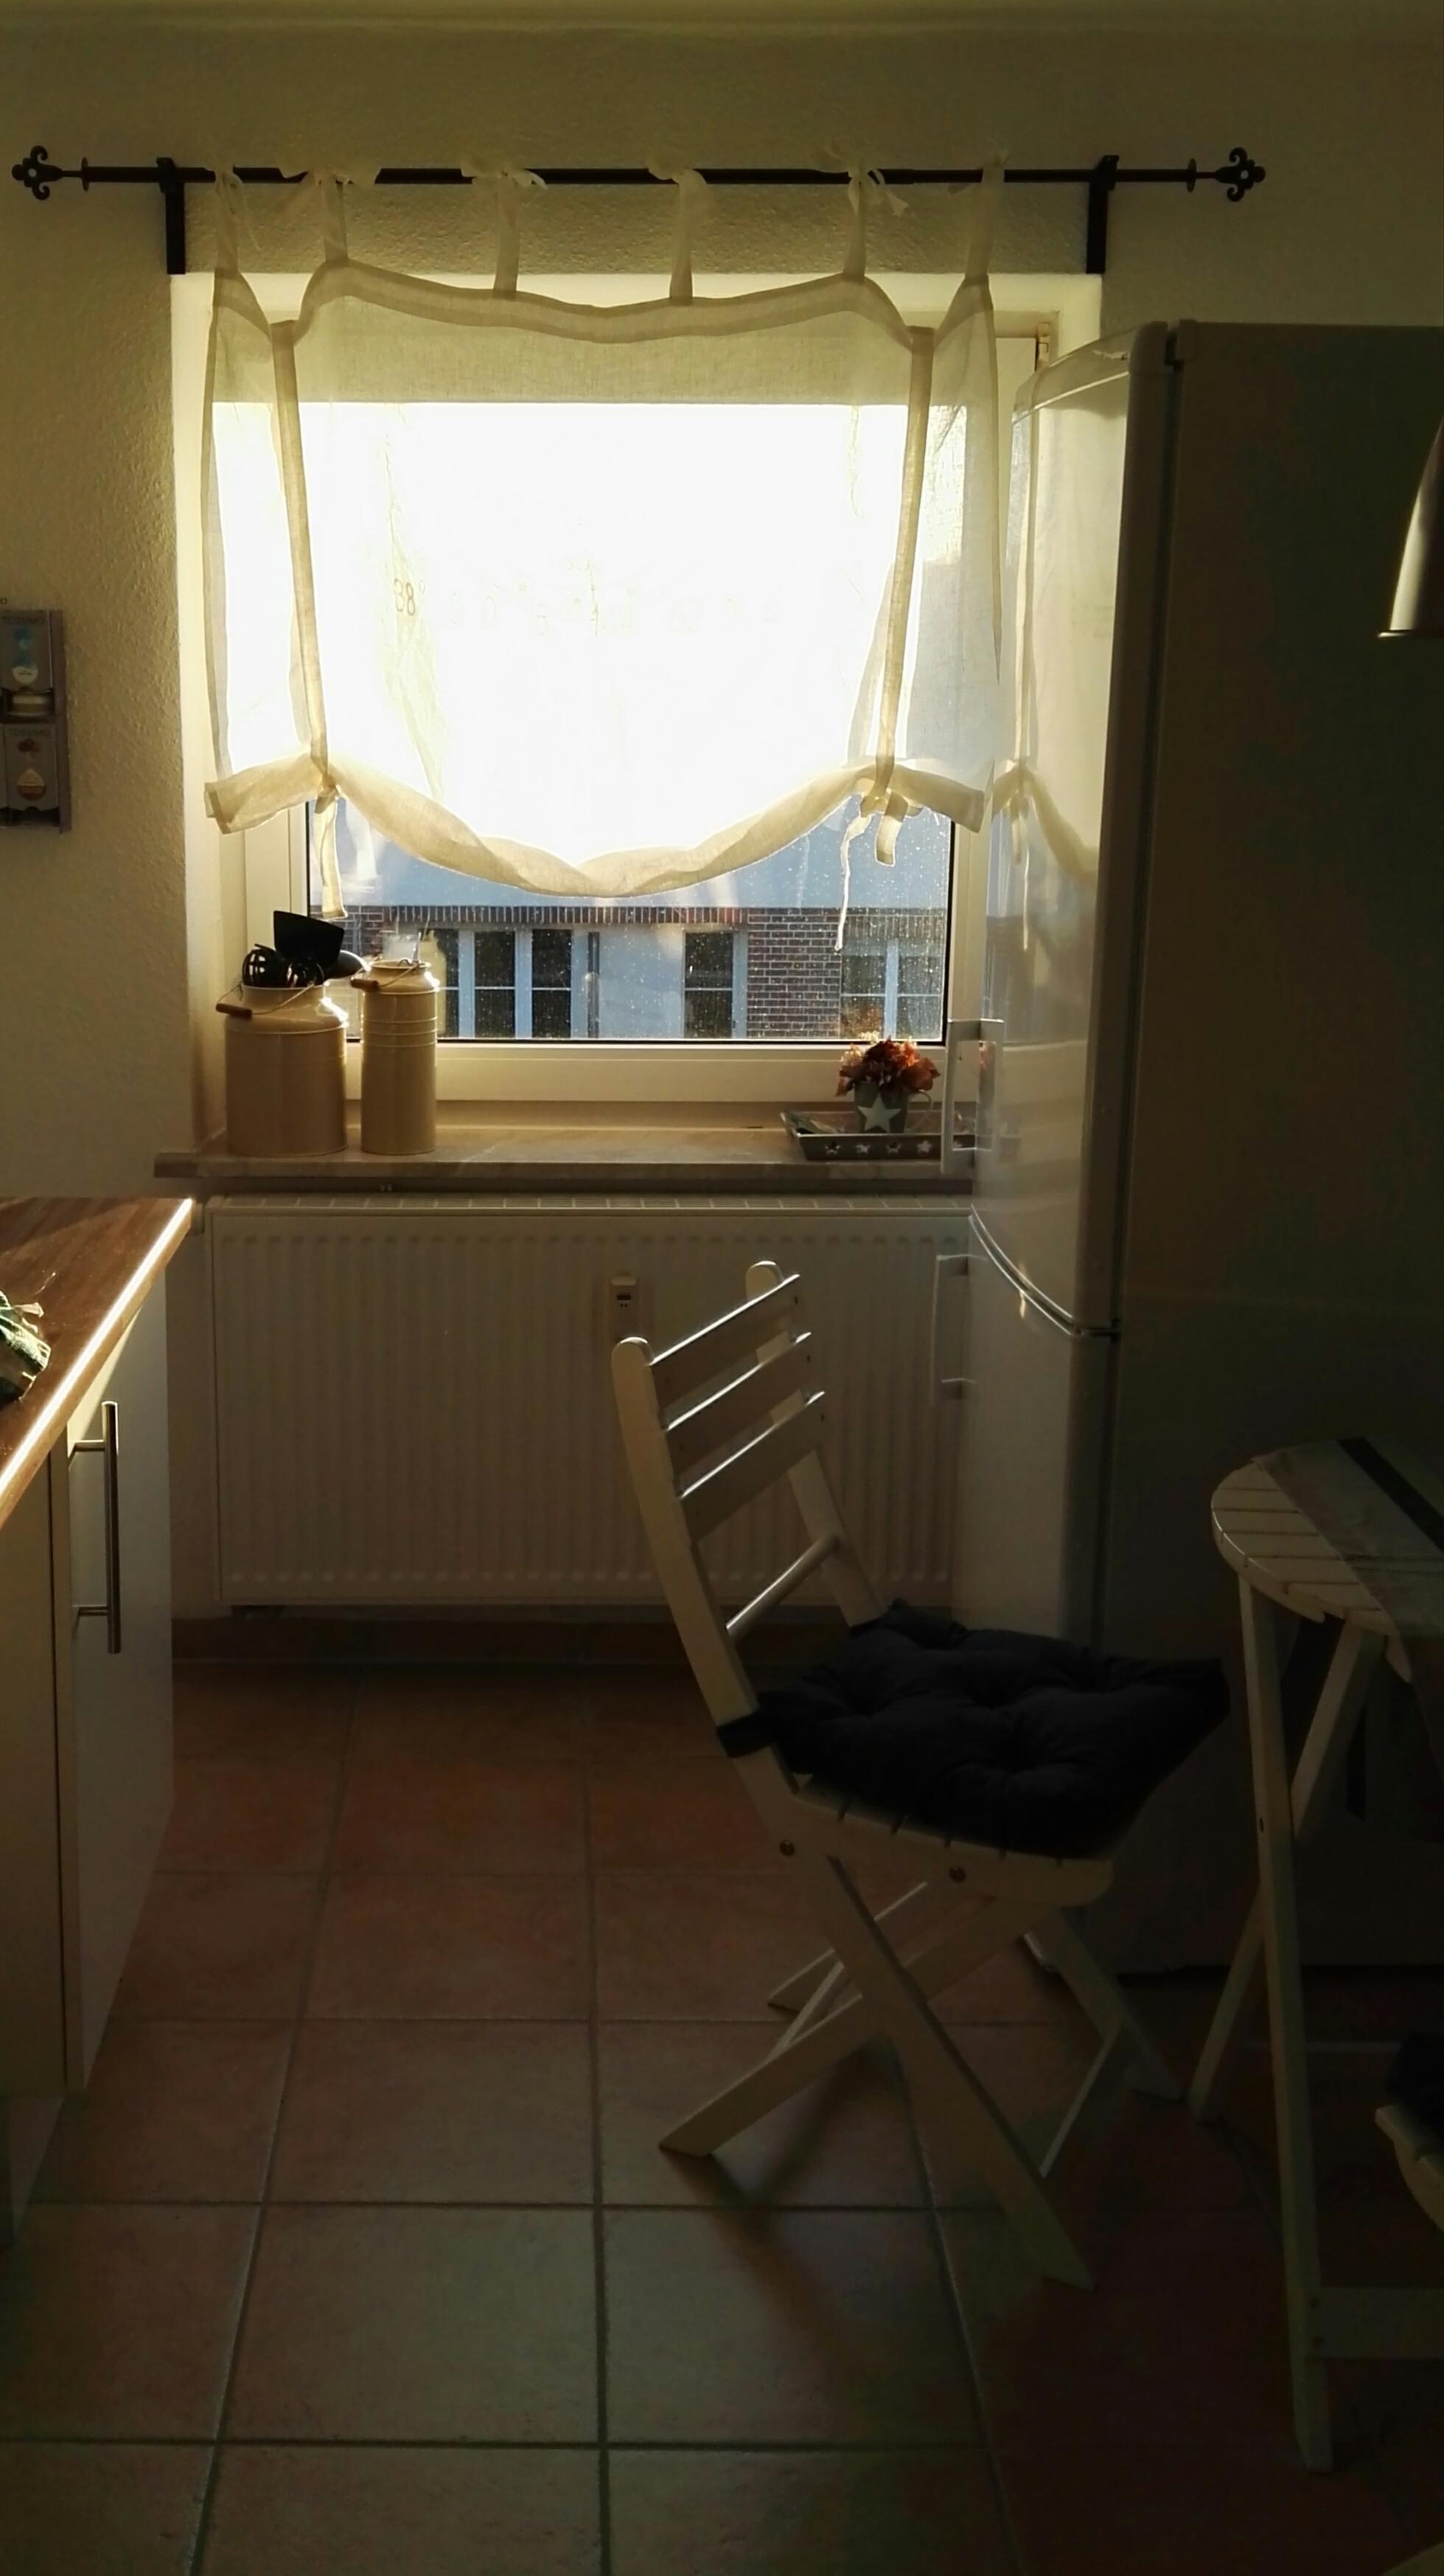 Balkonmöbel in der Küche - warum nicht? #ModernRecycling #Leinen #schlichtelegant